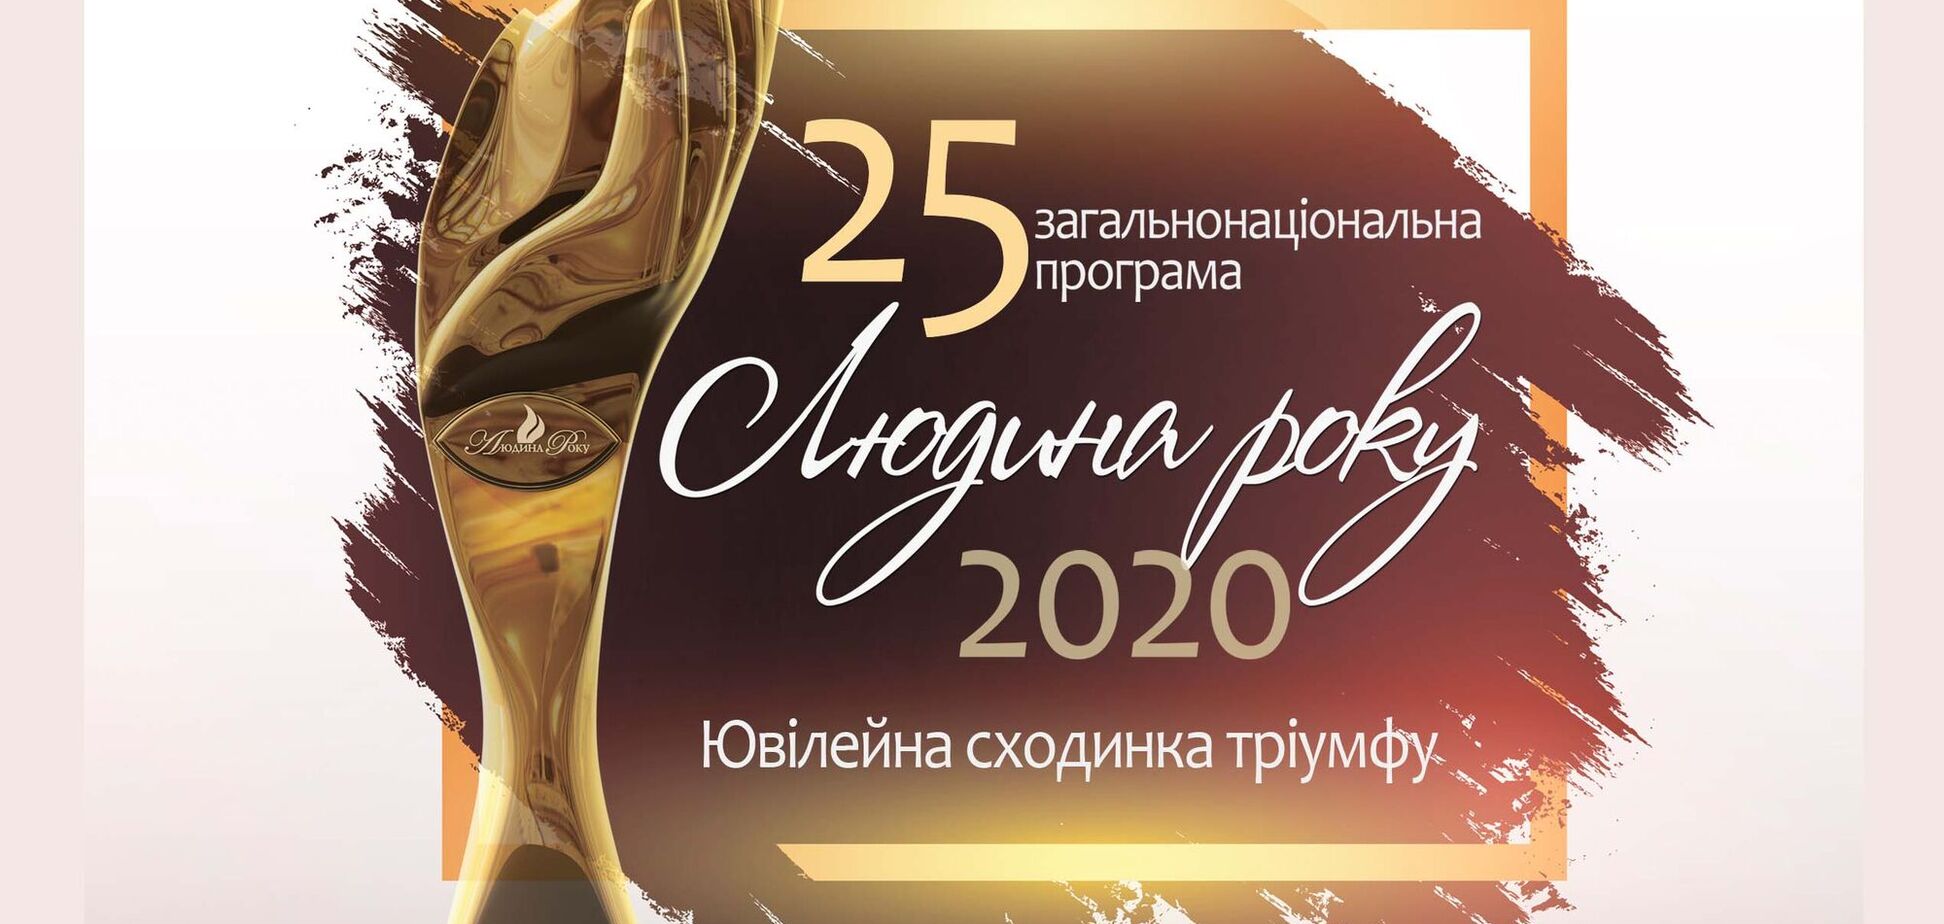 'Человек года – 2020' празднует 25-летний юбилей